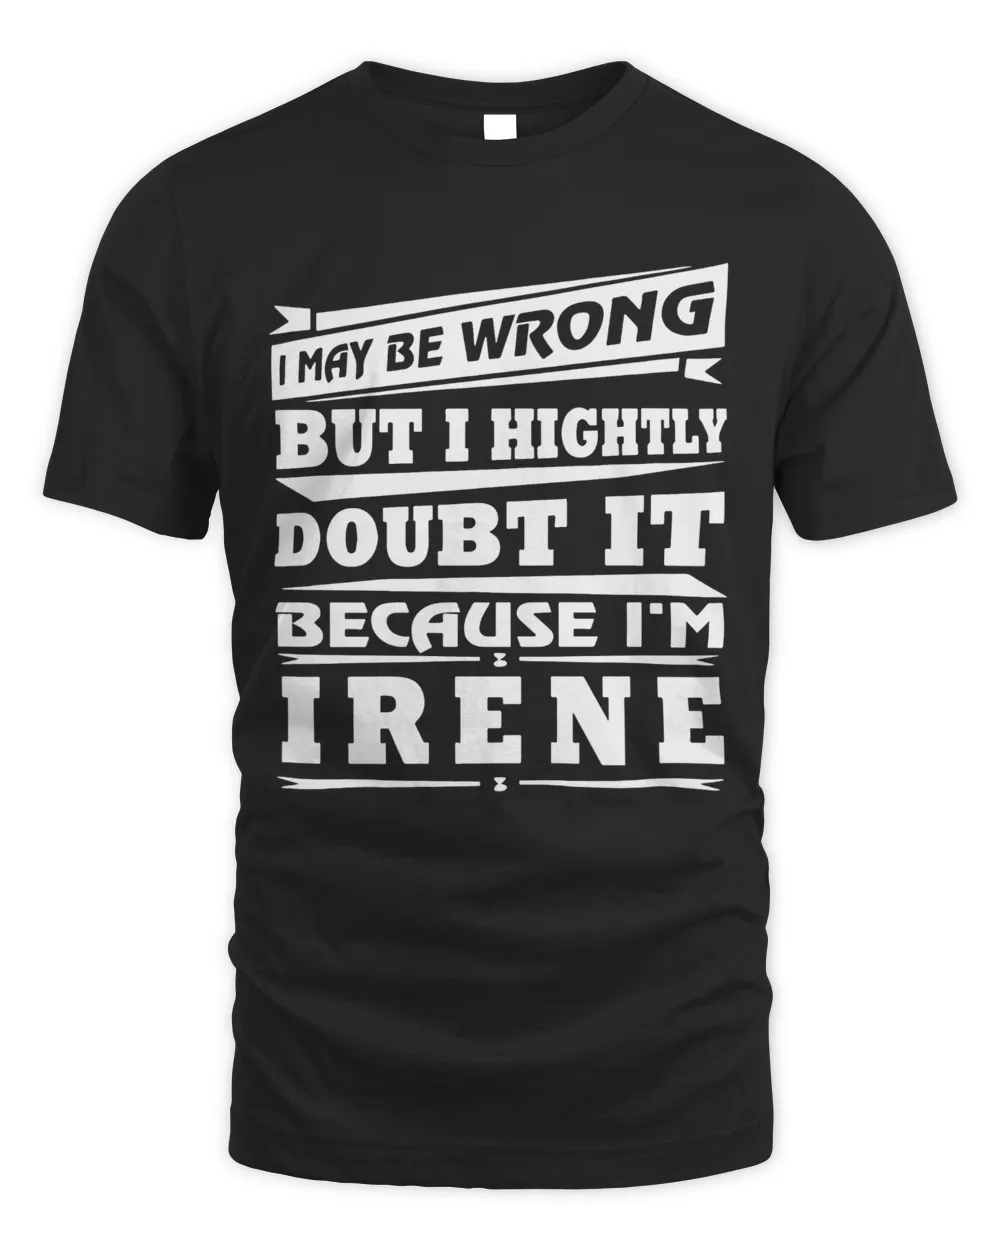 T-shirt Name Irene!!